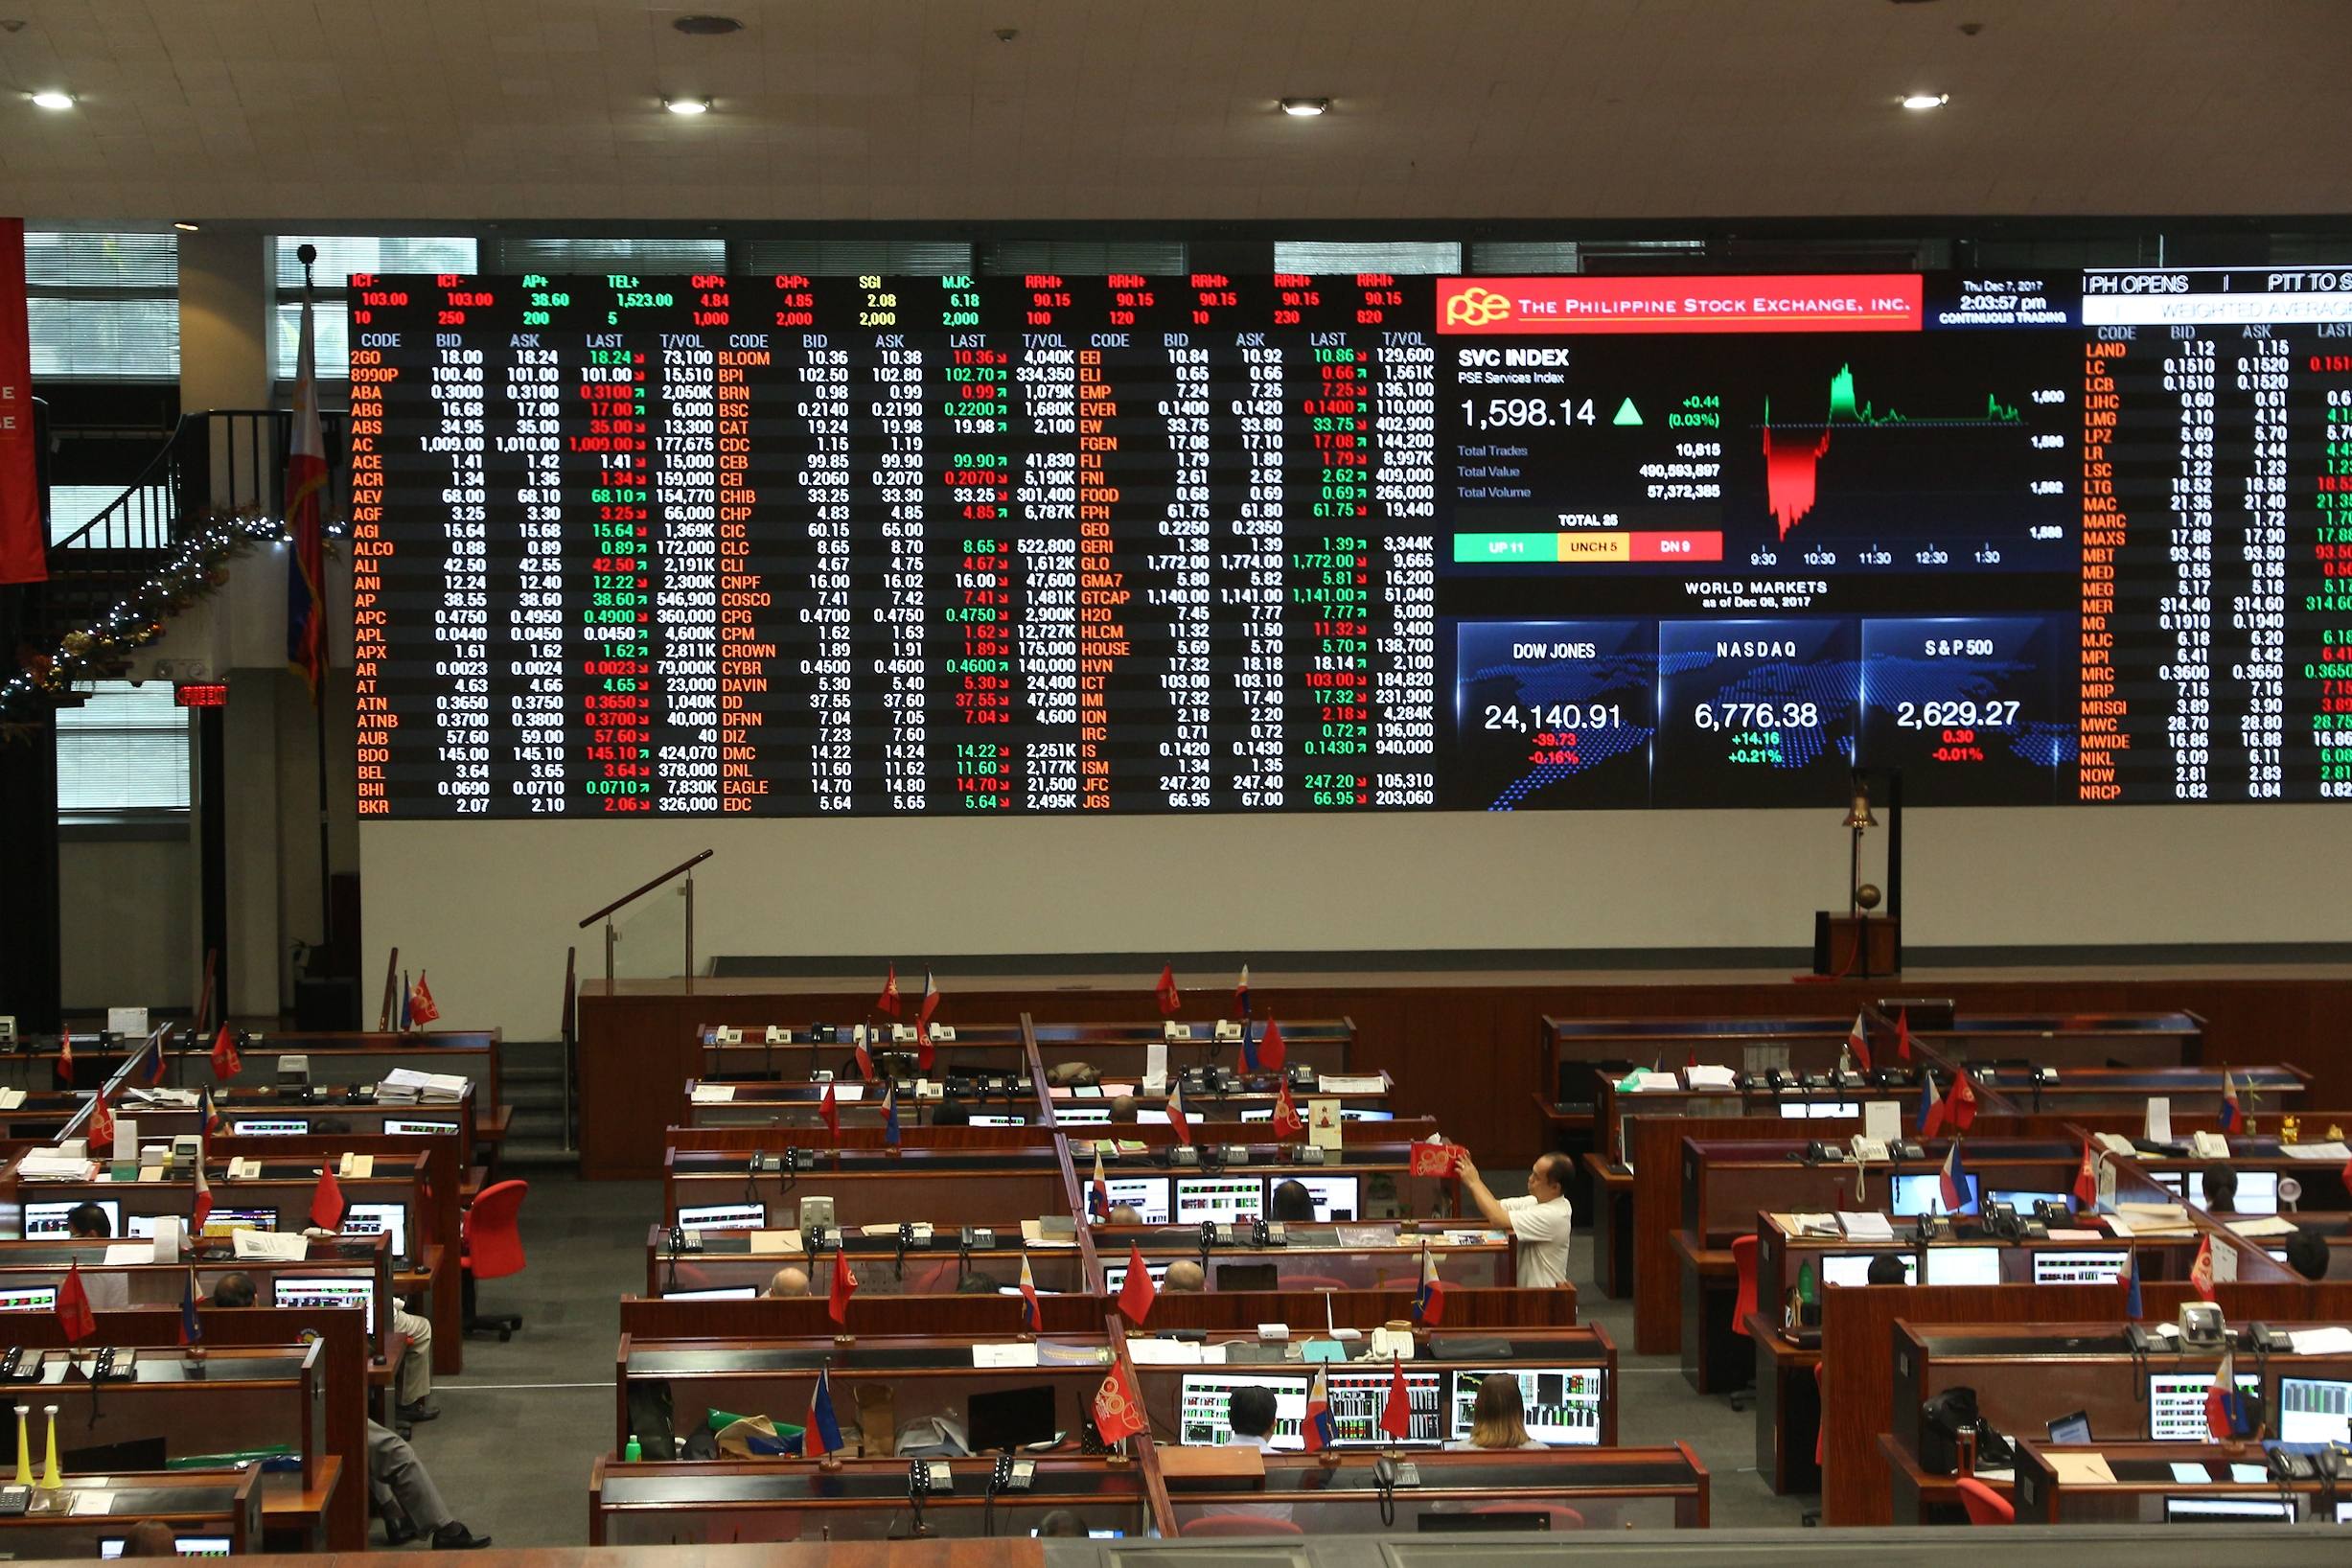 Philippine Stock Exchange Inc.